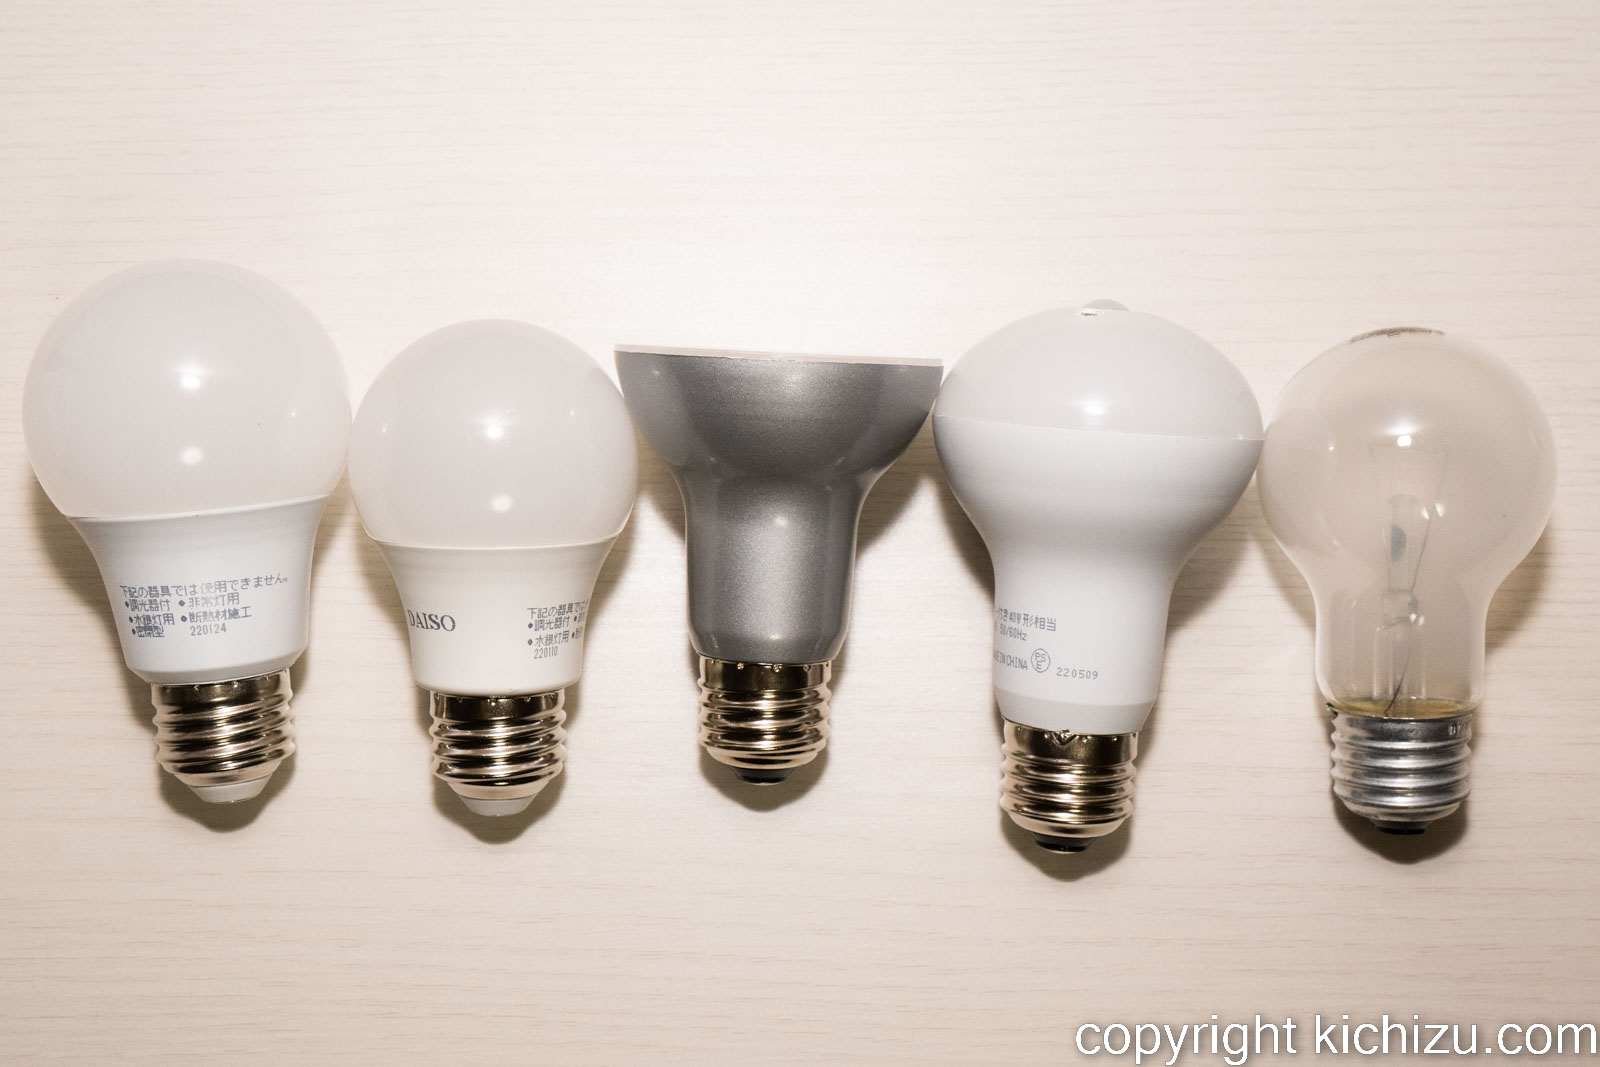 ダイソー LED 電球全種類とシリカ白熱電球との比較